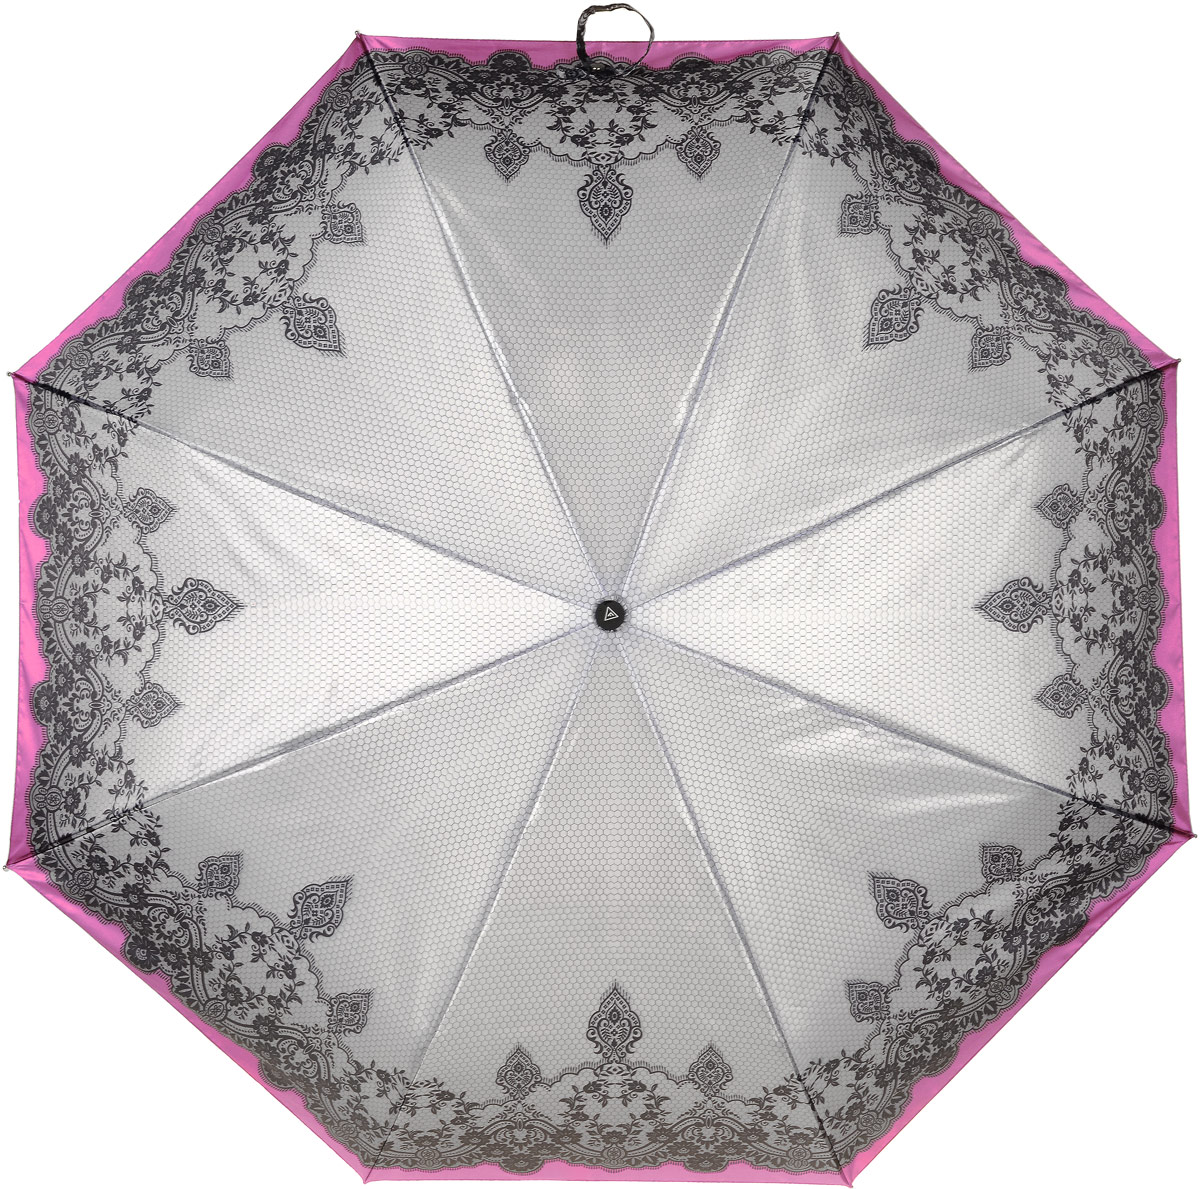 Зонт женский Fabretti, автомат, 3 сложения, цвет: серый, фуксия. S-17102-3